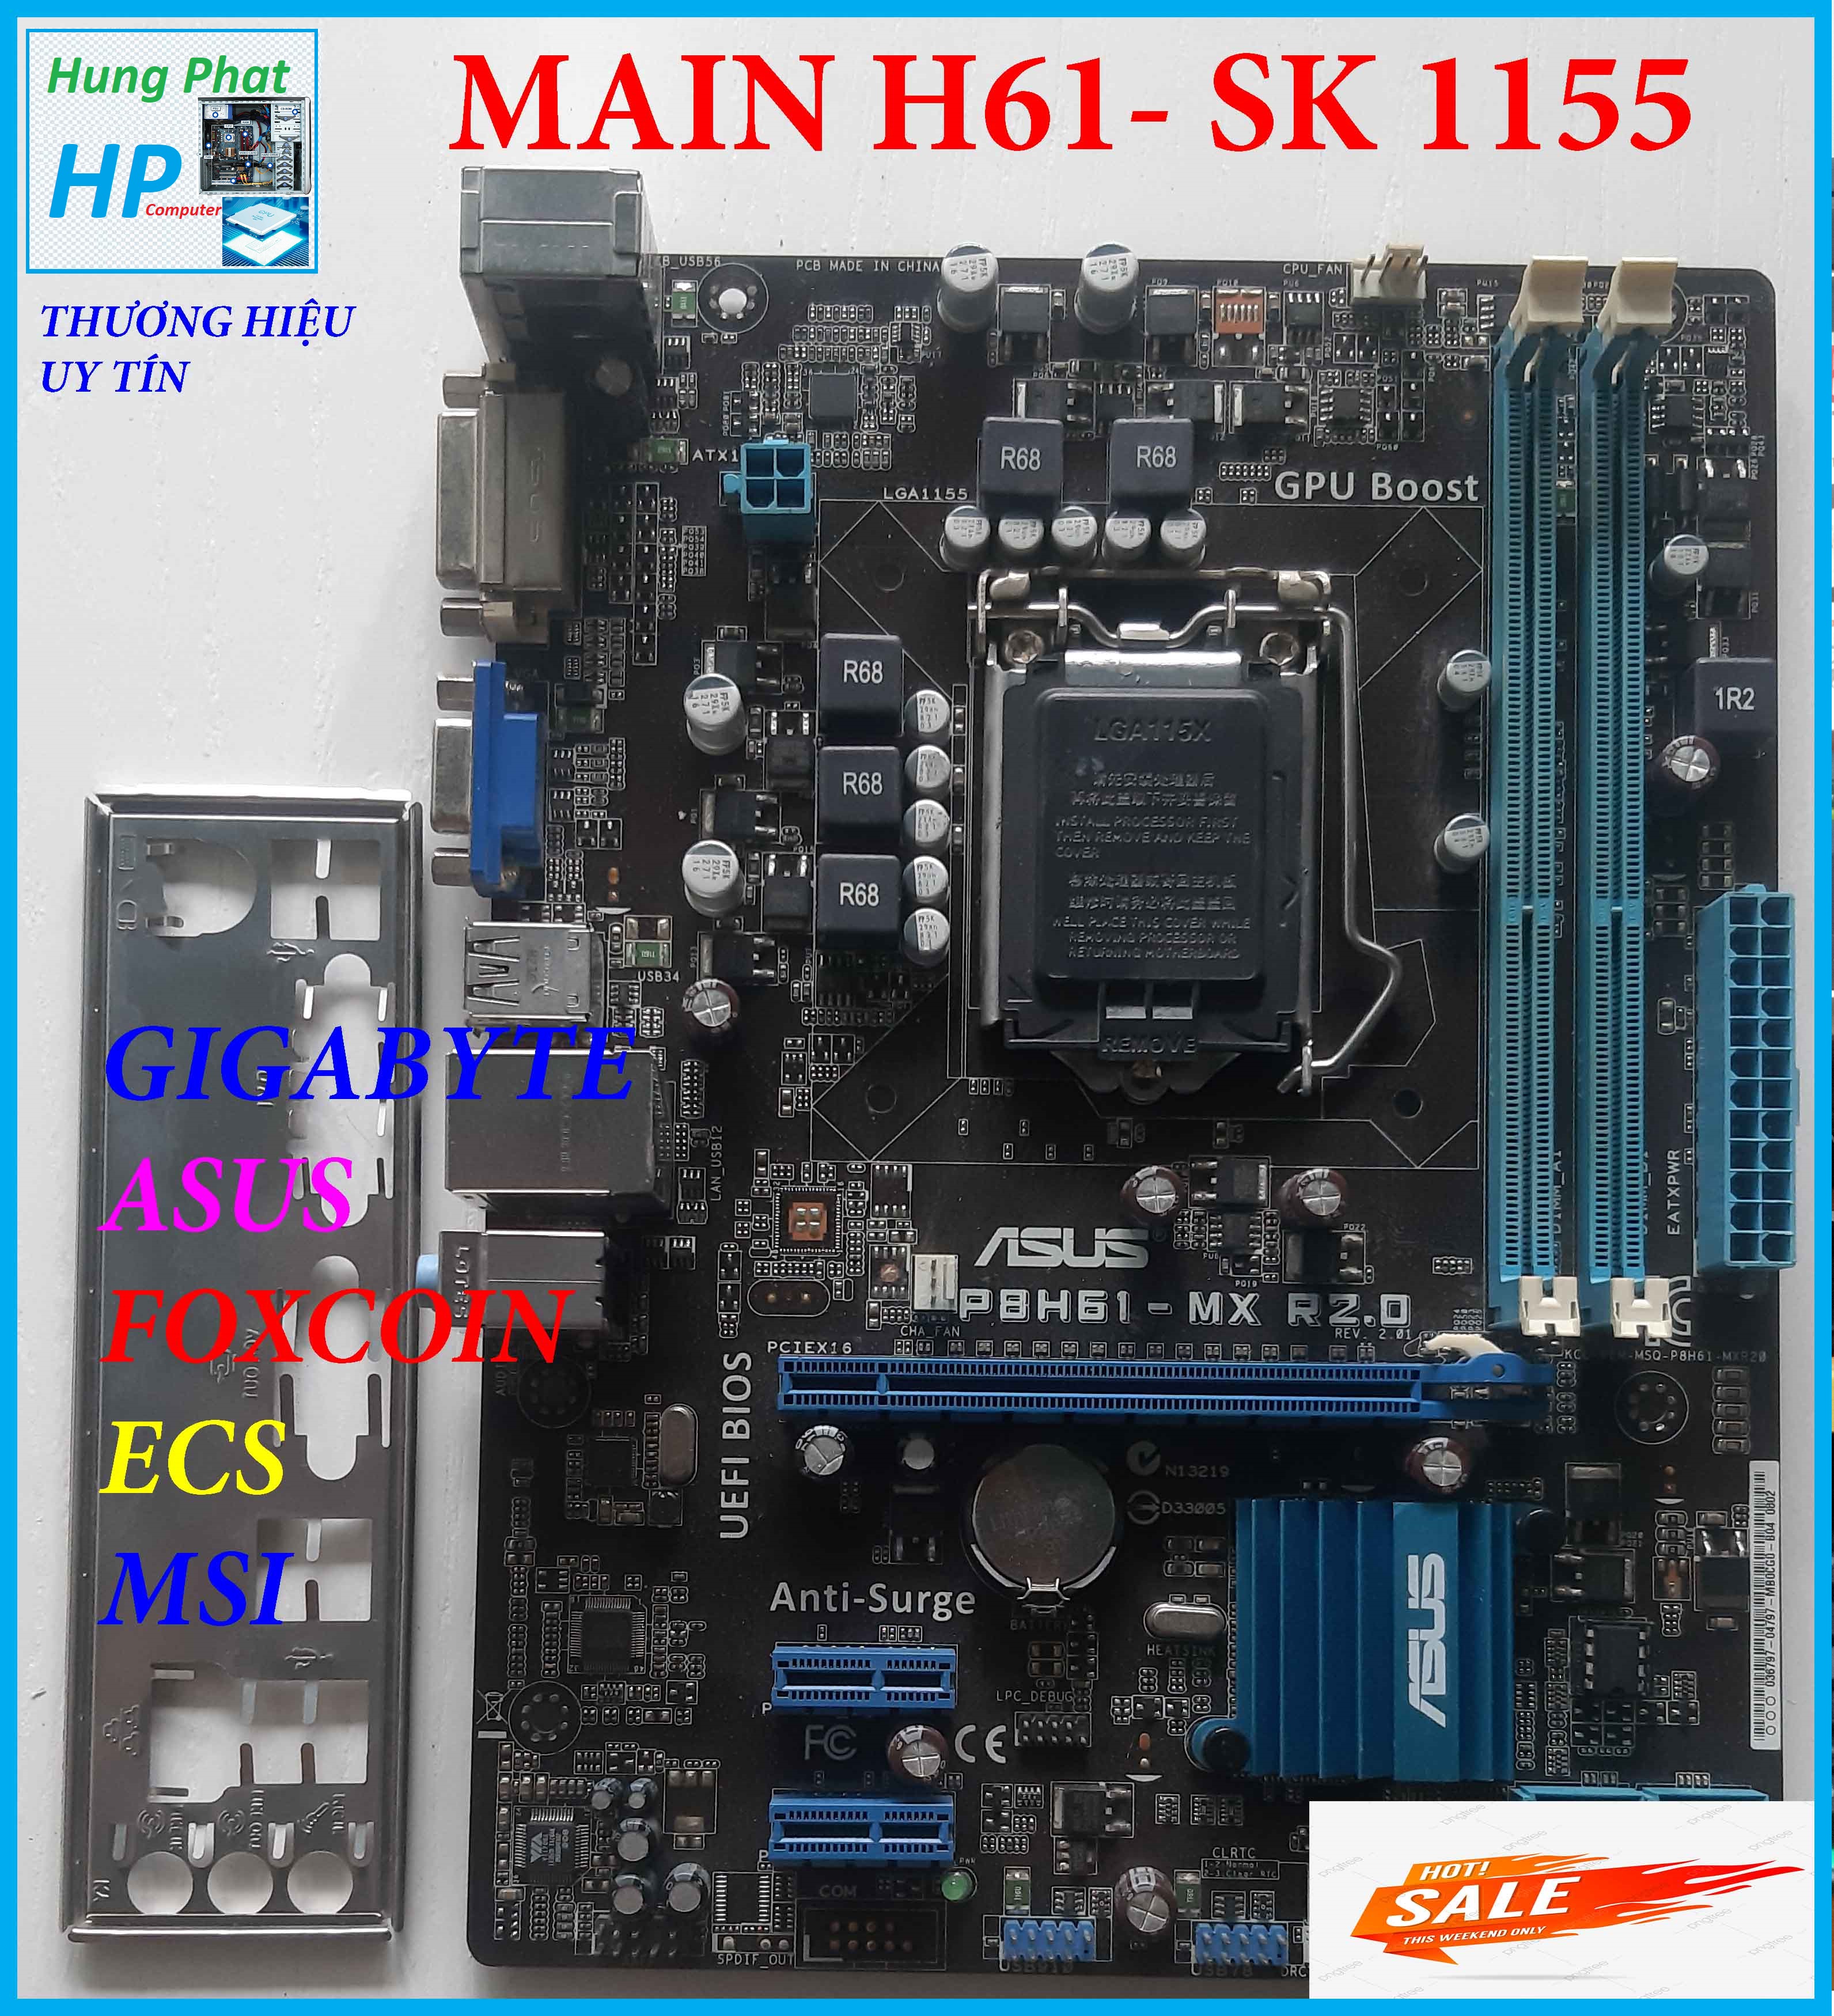 Thùng CPU , Thùng máy tính để bàn core i3 3xxx main h61, ddram3 4G, hdd 250g vga 2G chơi...